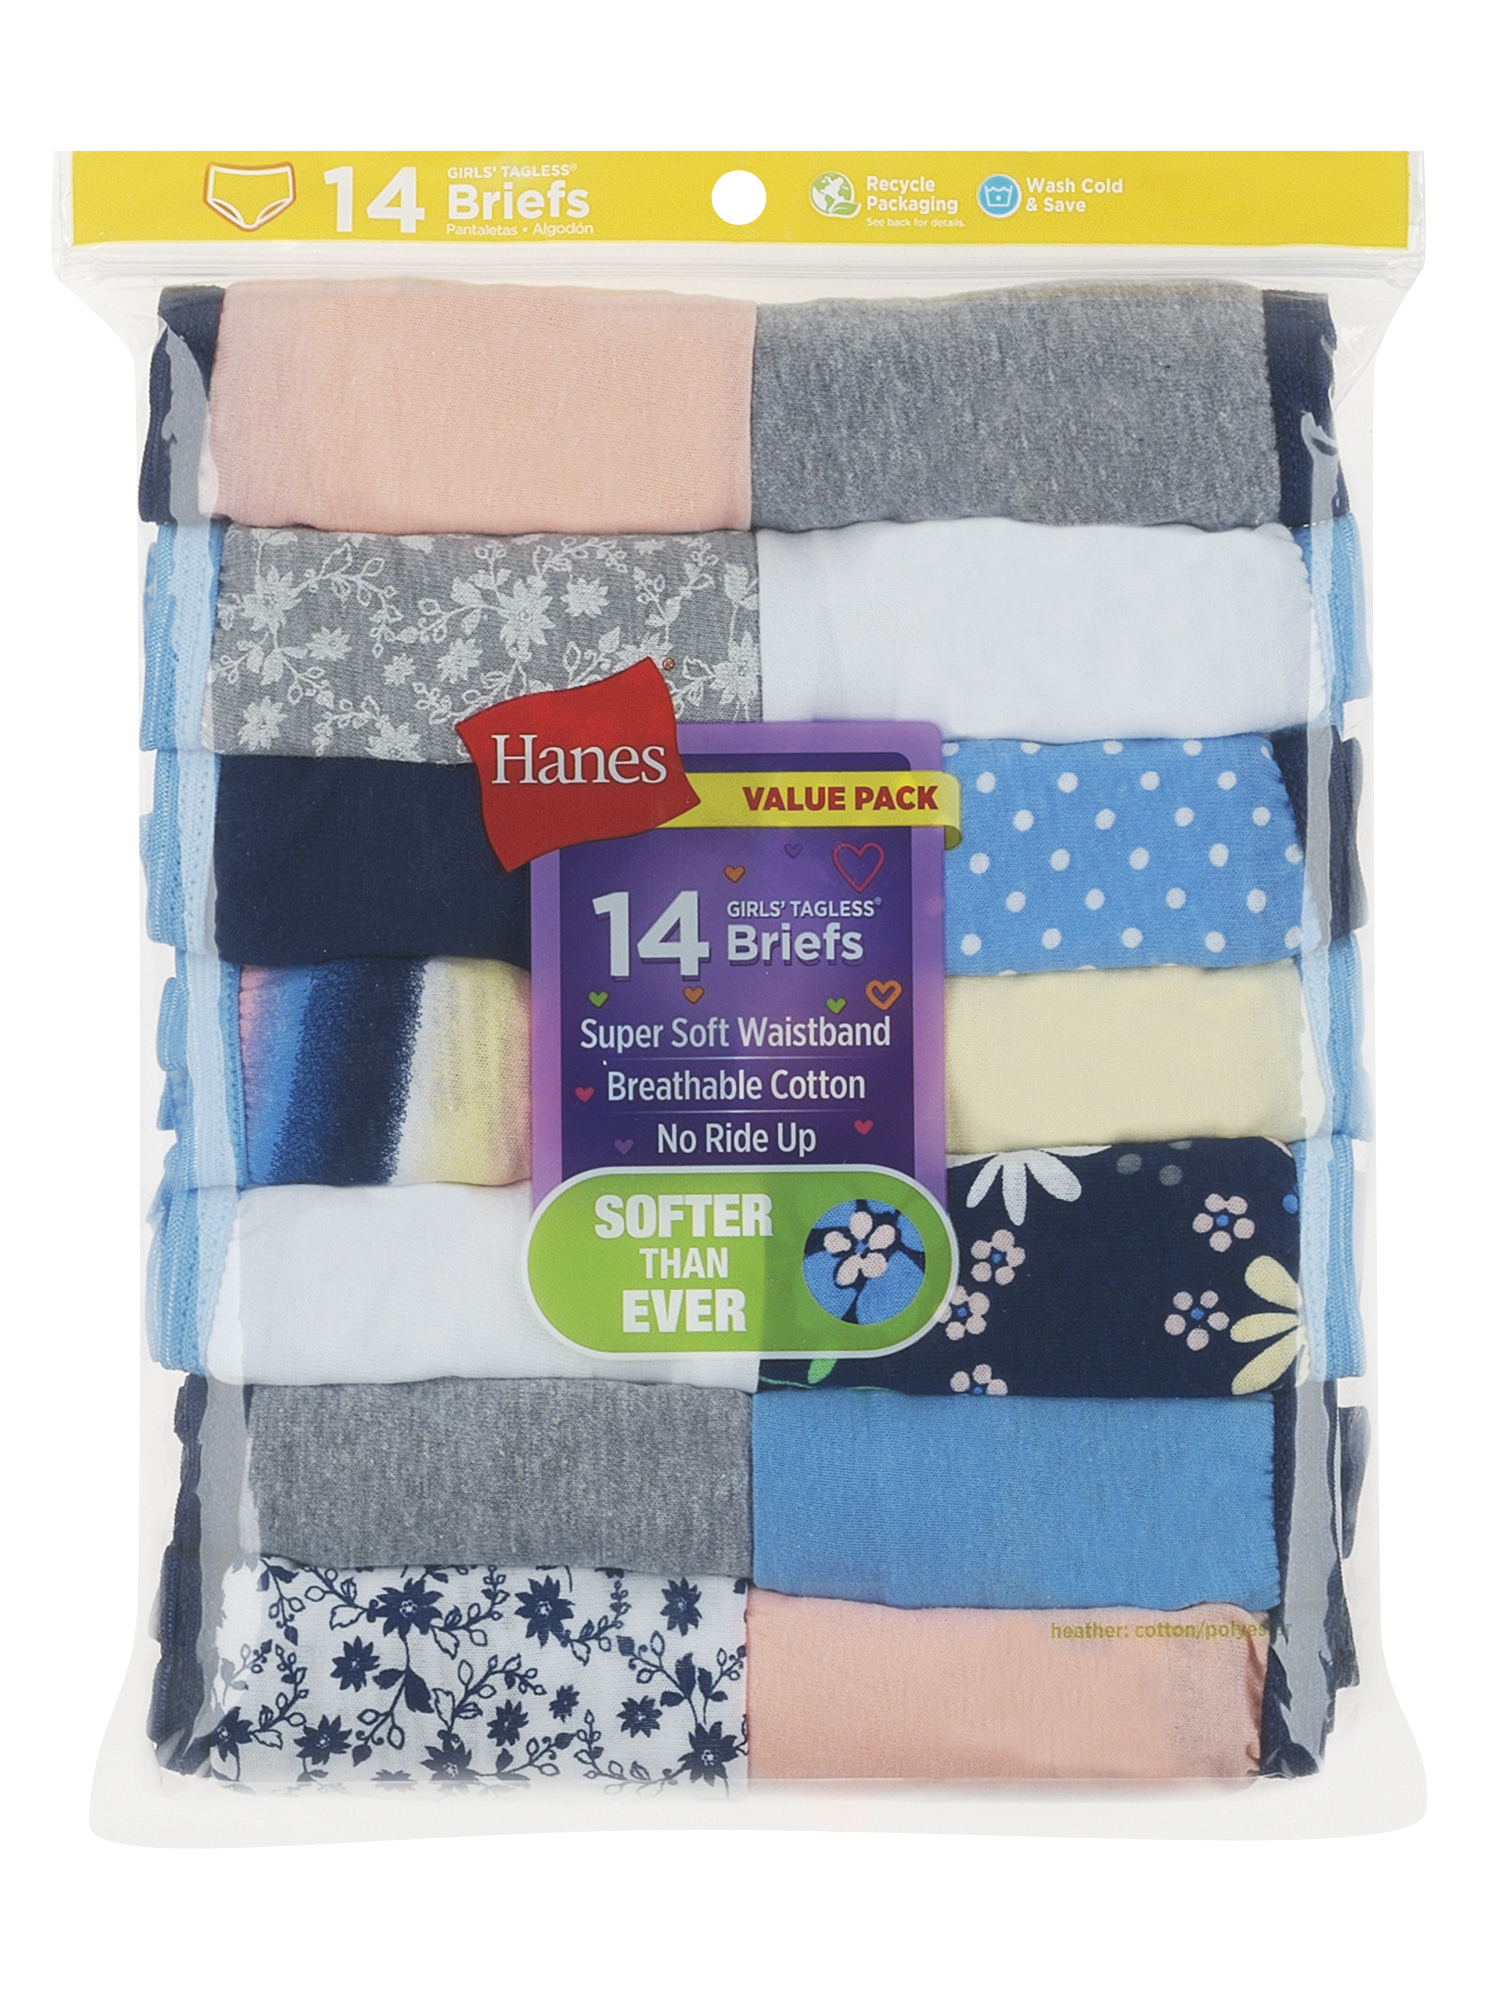 Hanes Girls' Tagless Underwear Super Soft Cotton Briefs, 14 pack - image 4 of 4